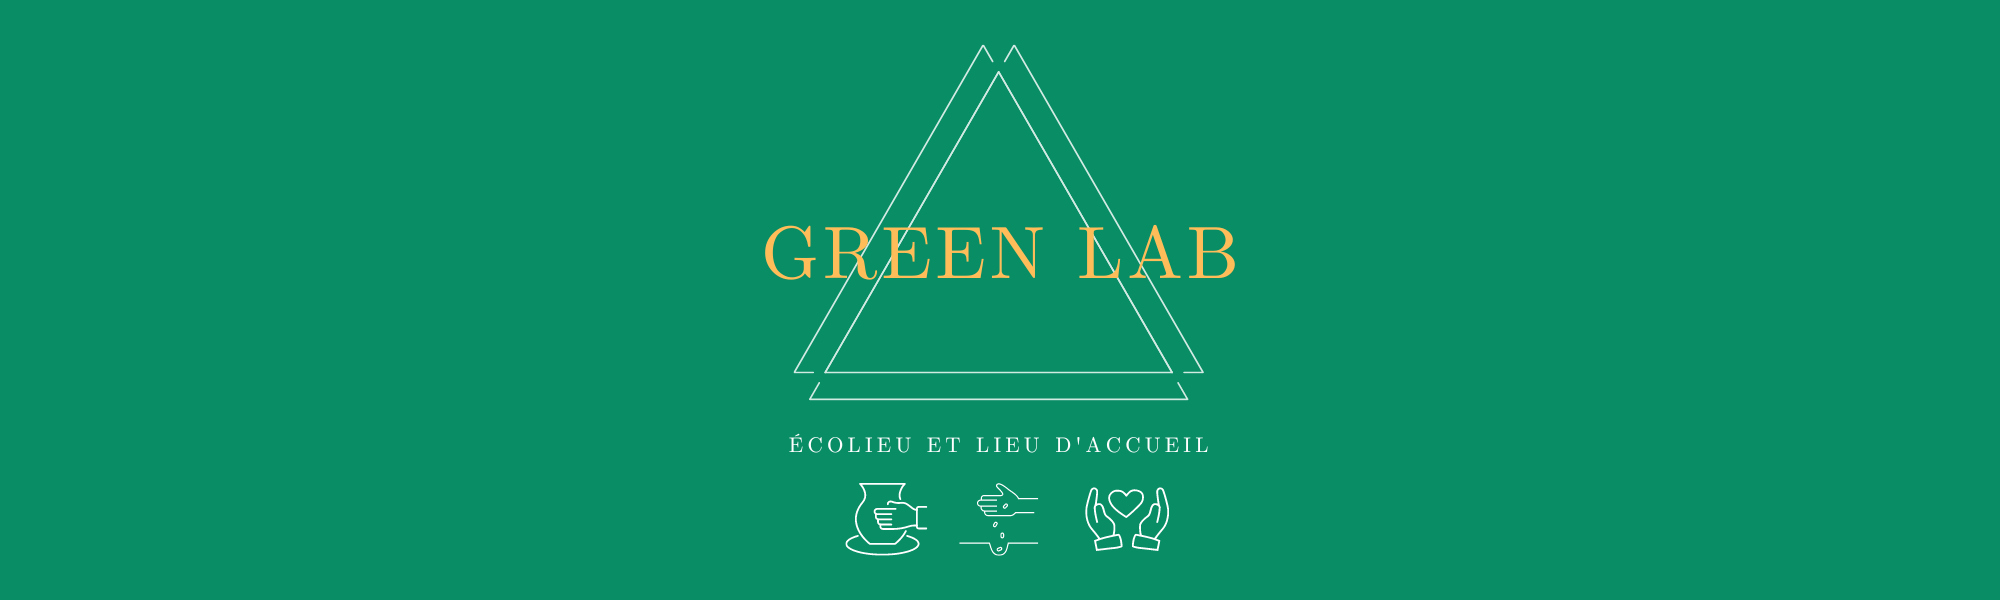 le-Green-Lab------Ecolieu-et-lieu-d'accueil-de-Green-et-Local